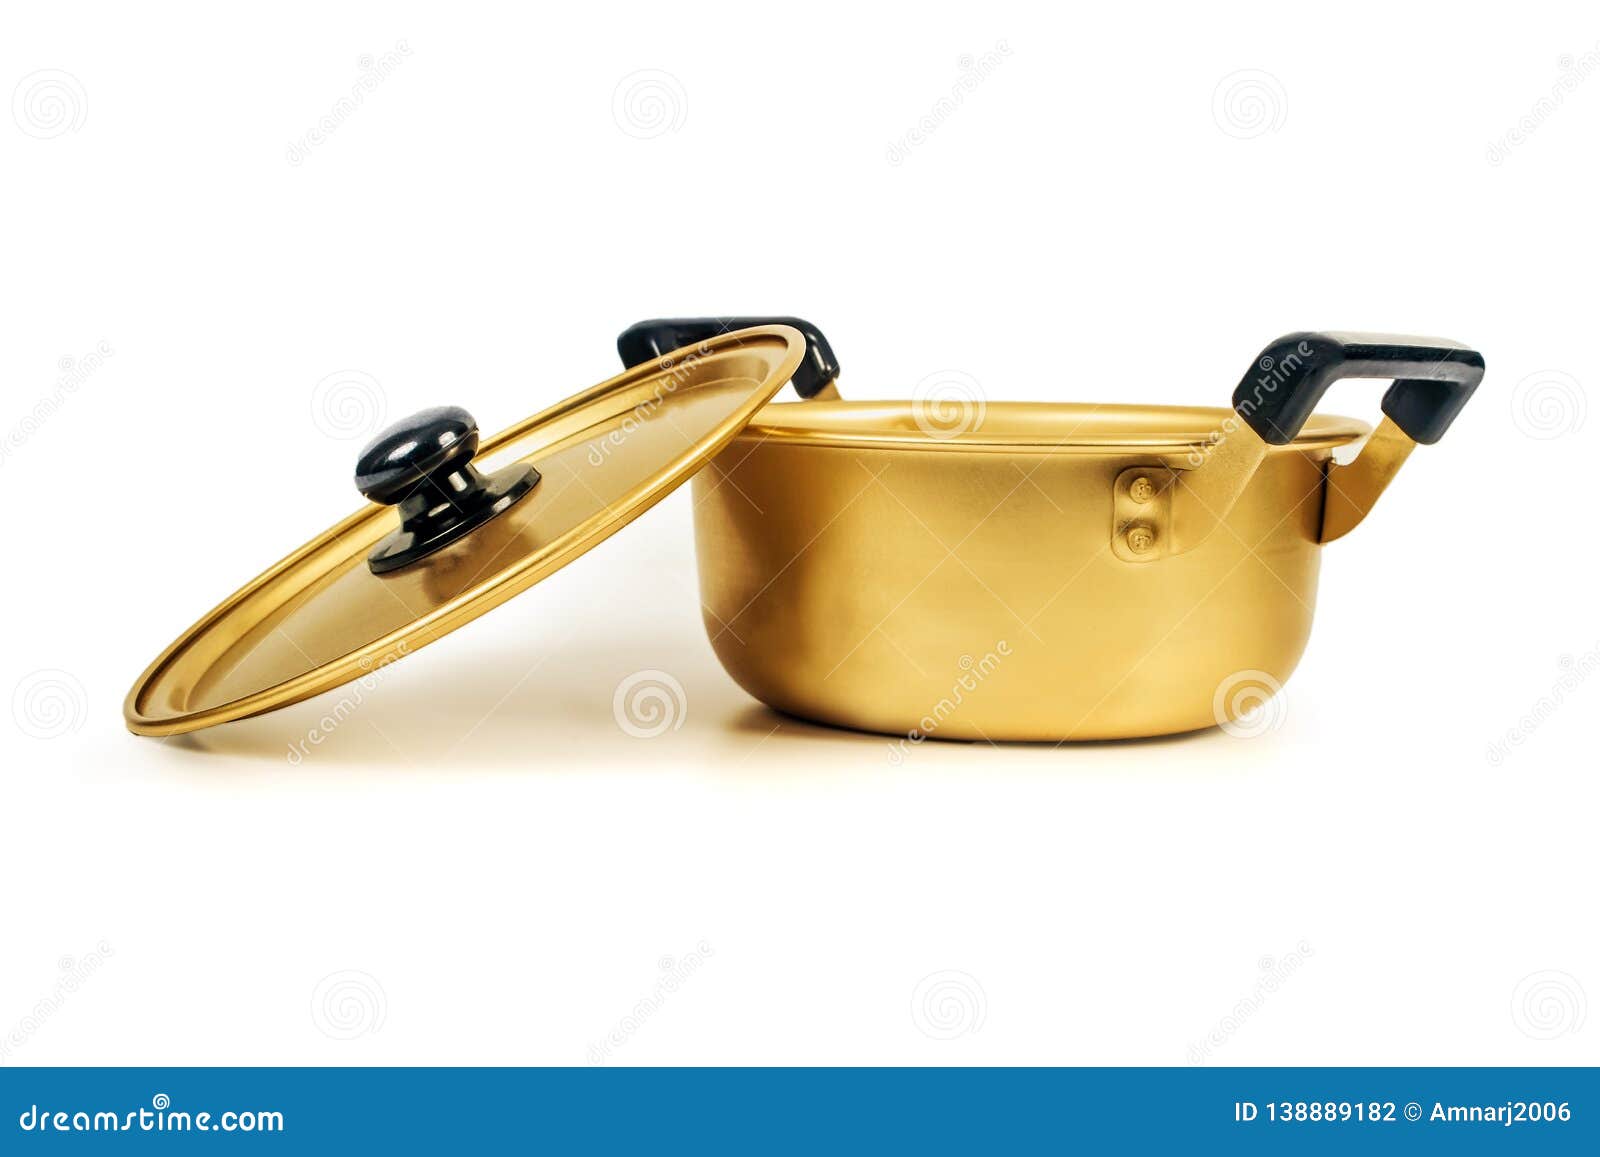 Gold Metallic Pot Kitchenware on White Stock Photo   Image of ...